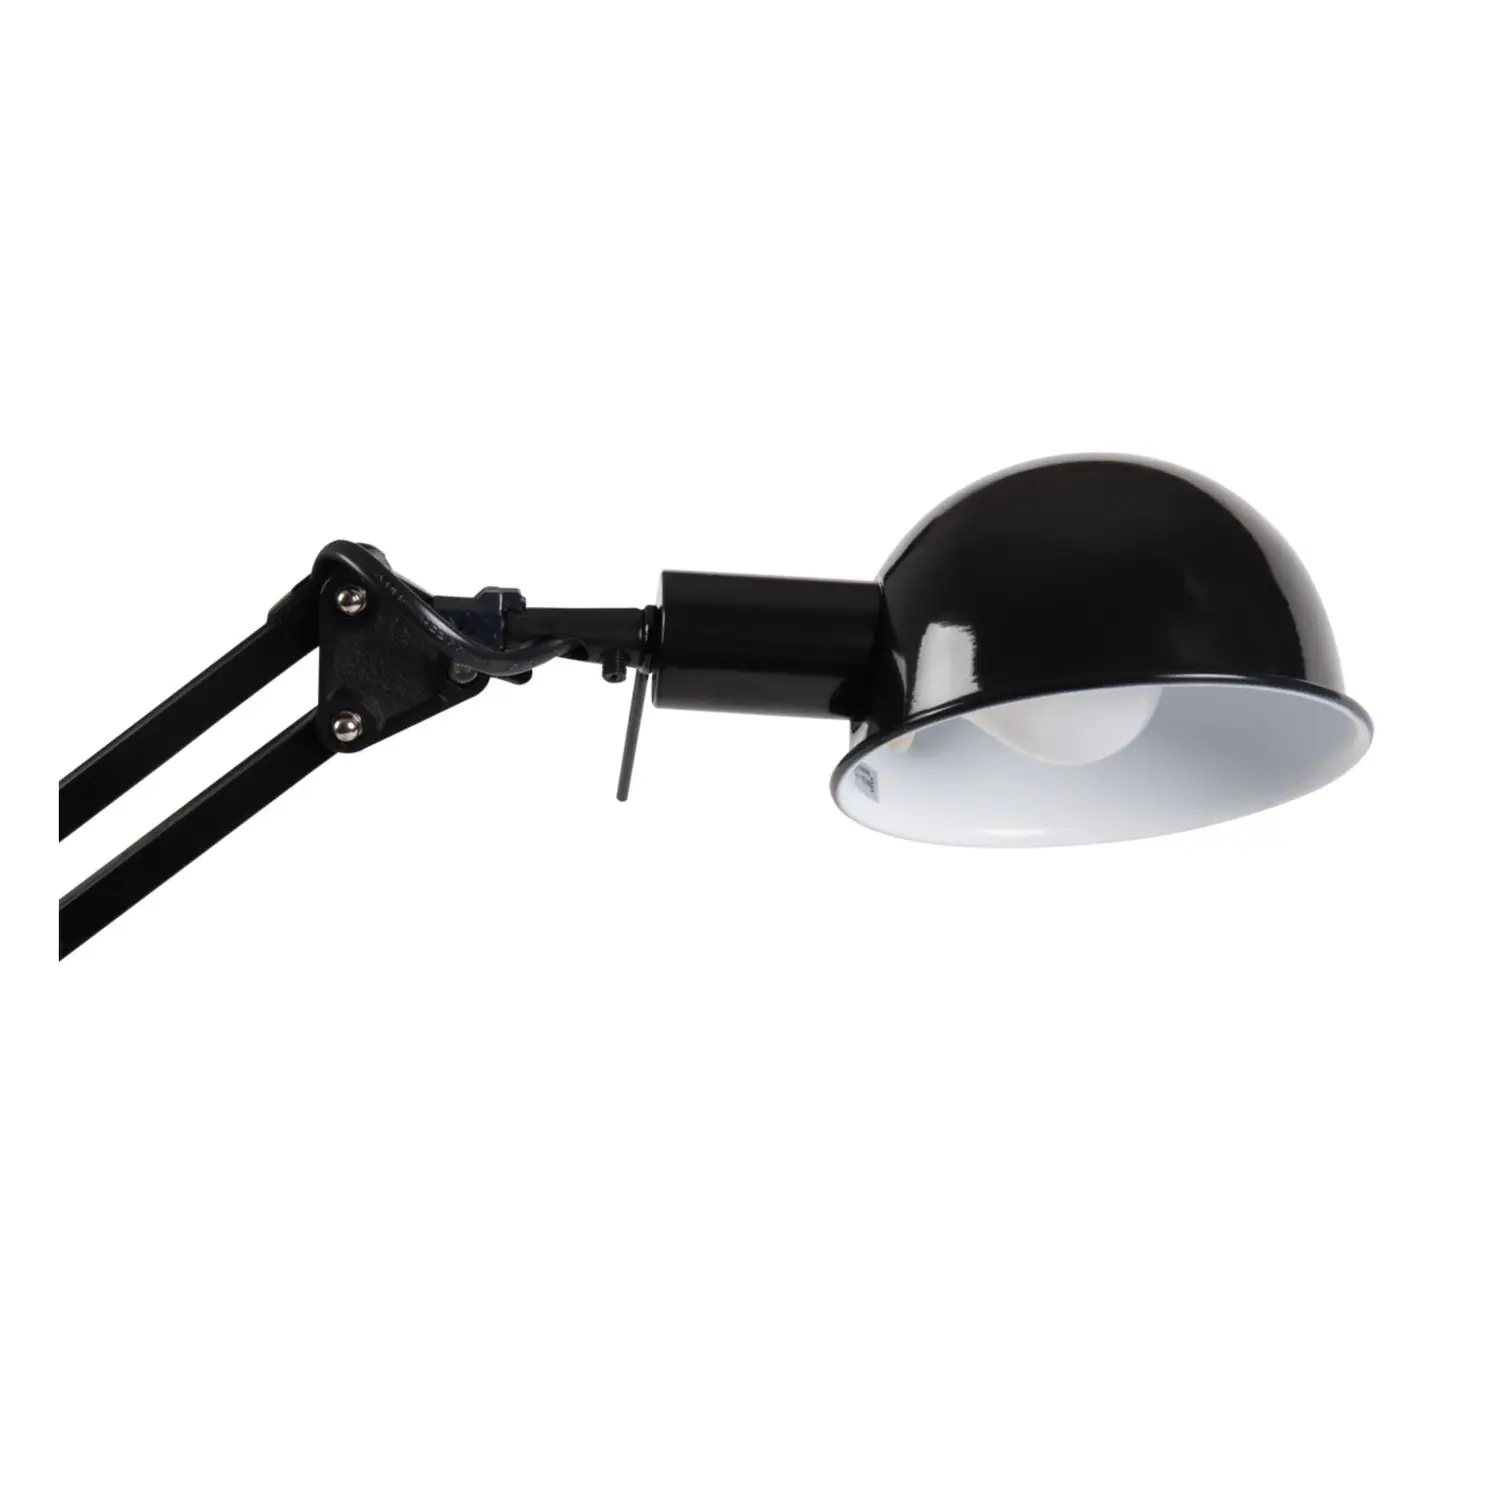 immagine lampada scrivania braccio regolabile pixa e14 nero